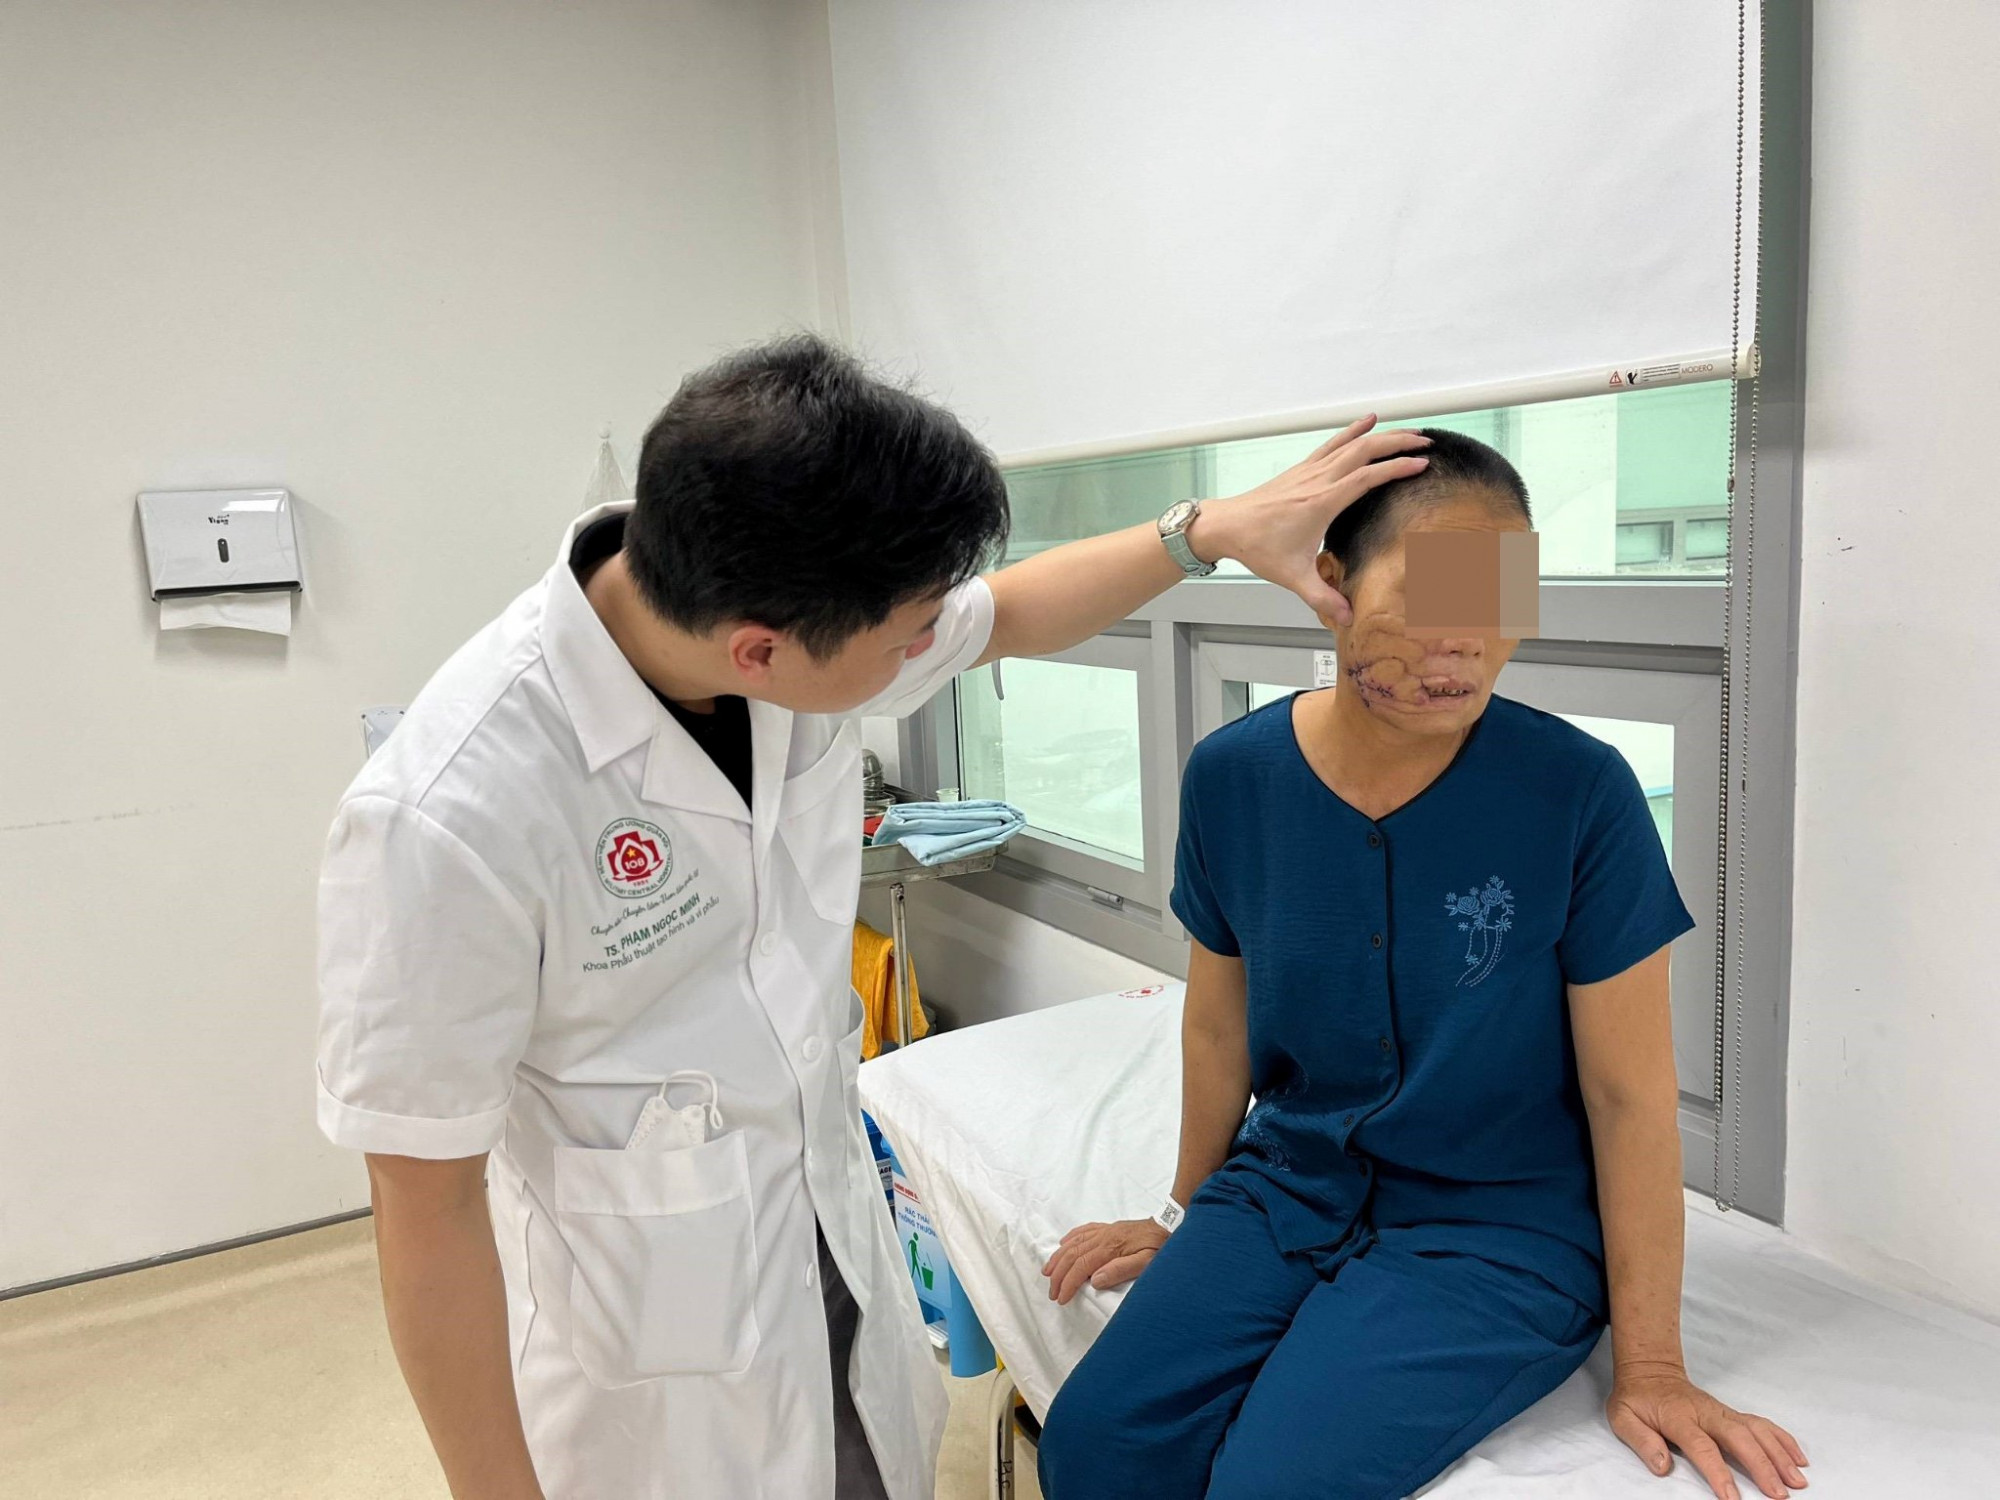 Nữ bệnh nhân bị tổn thương nặng vùng mặt sau khi ngã vào máy cắt cỏ - Ảnh: Bệnh viện cung cấp